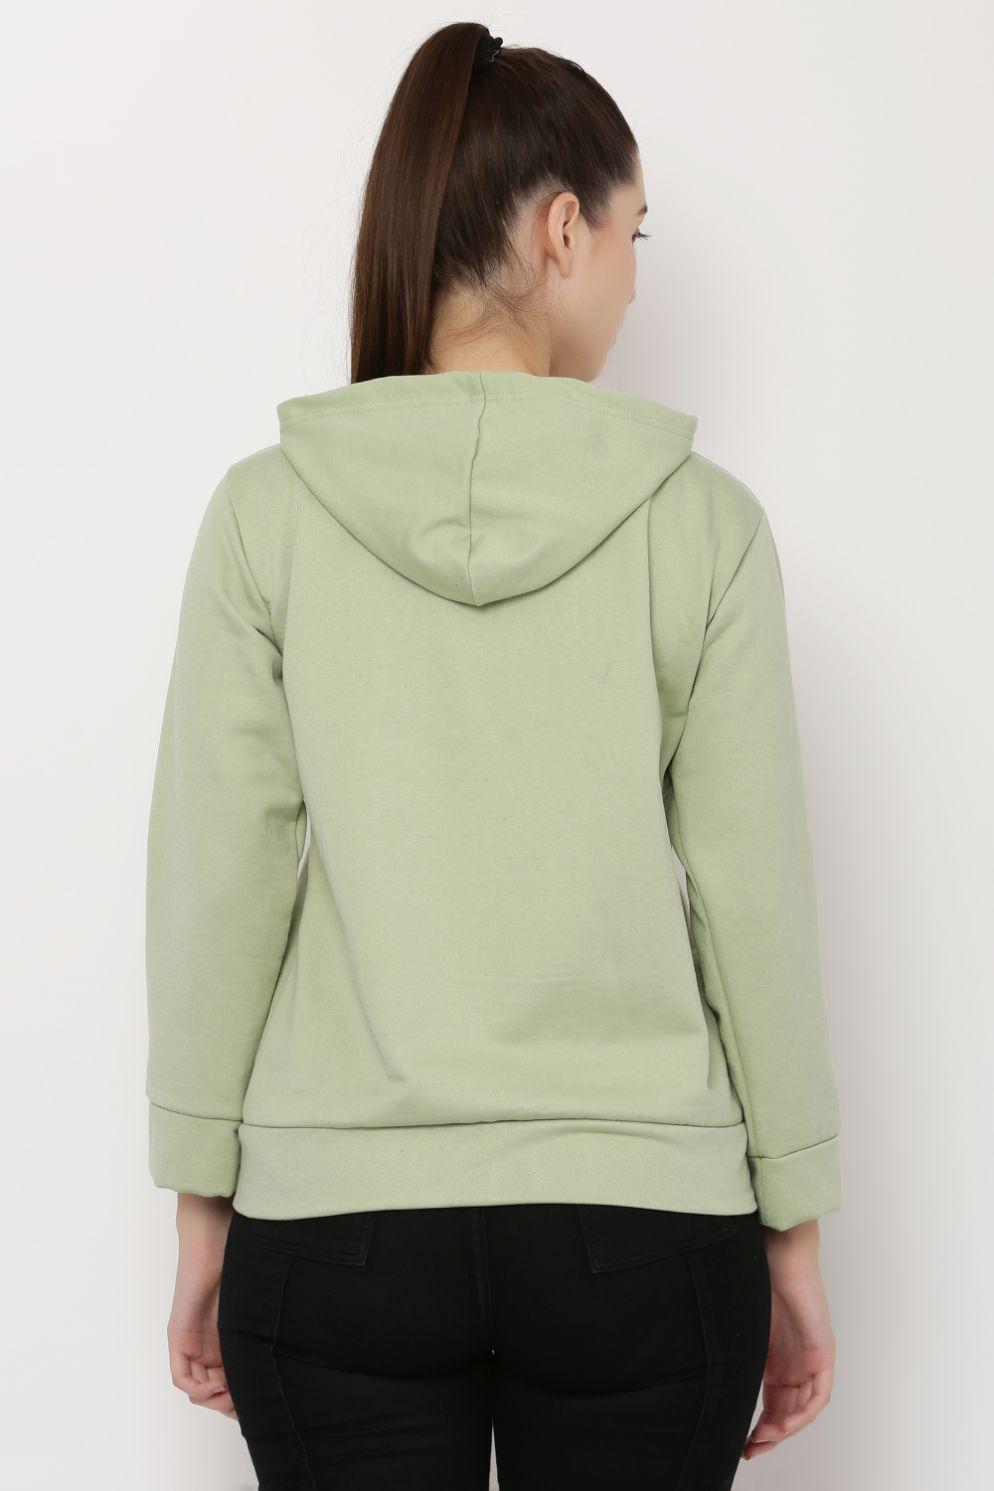 Women's Fleece Solid Full Sleeve Zipper Hoodie